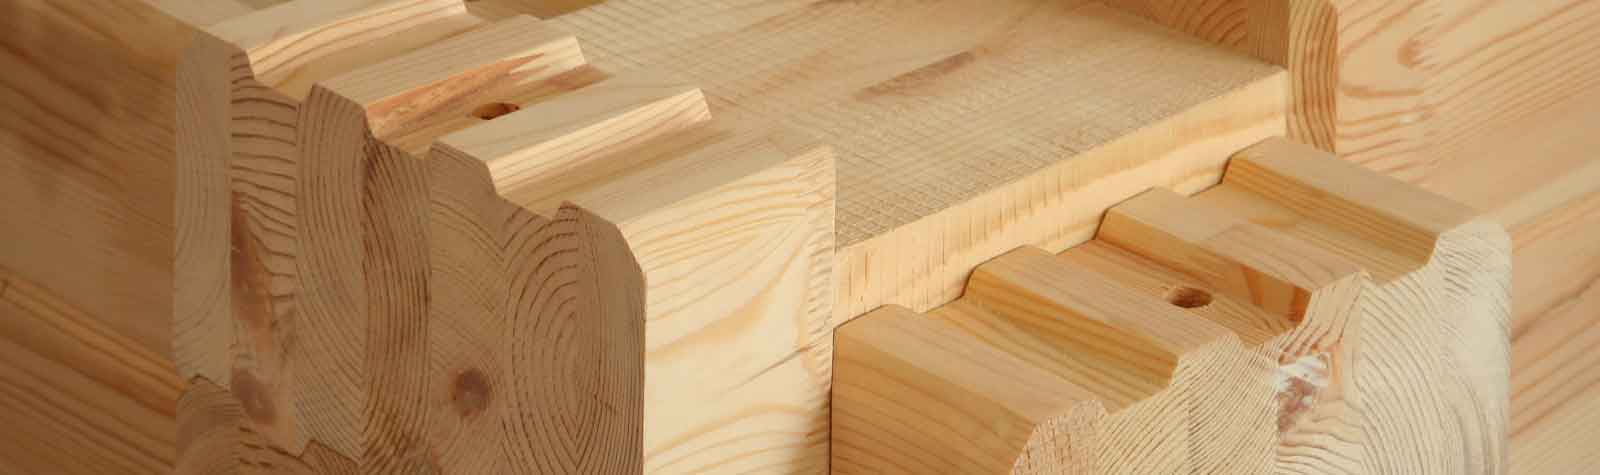 Как правильно спроектировать свой деревянный дом?